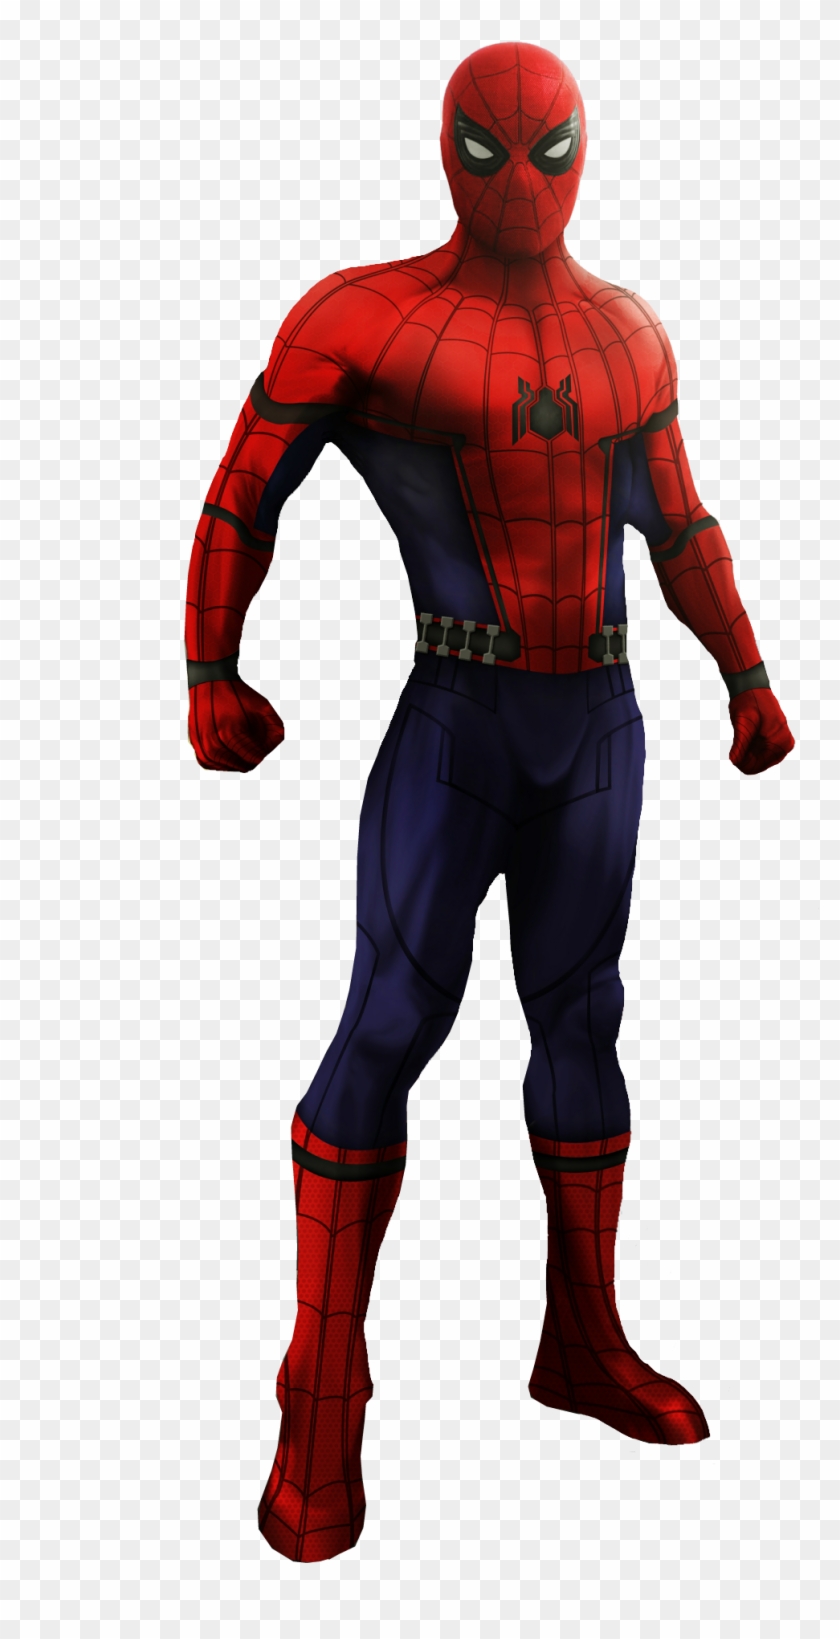 Asthonx1 86 4 Spider-man - Spider Man Mcu Transparent #317803